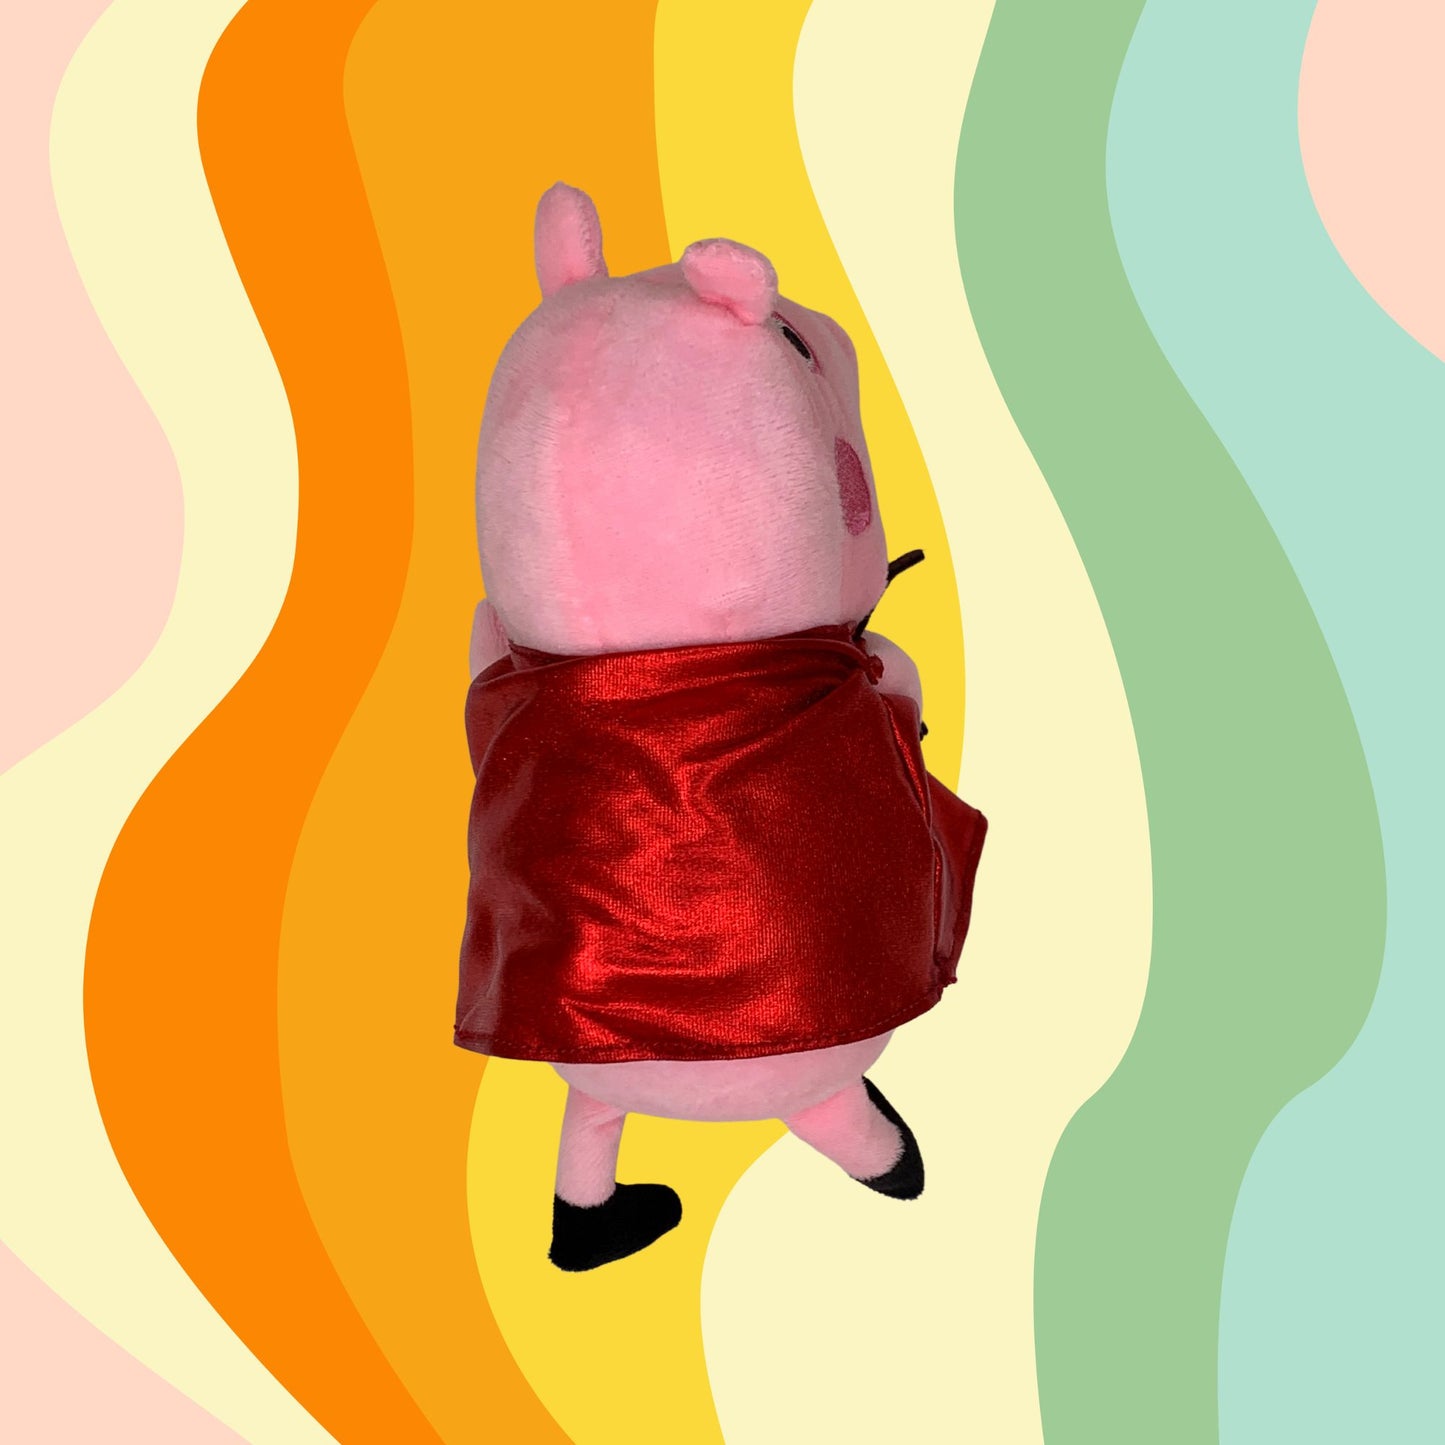 Peppa Pig Kit Regalo Peluche Cariñoso + Taza Mágica Personalizada